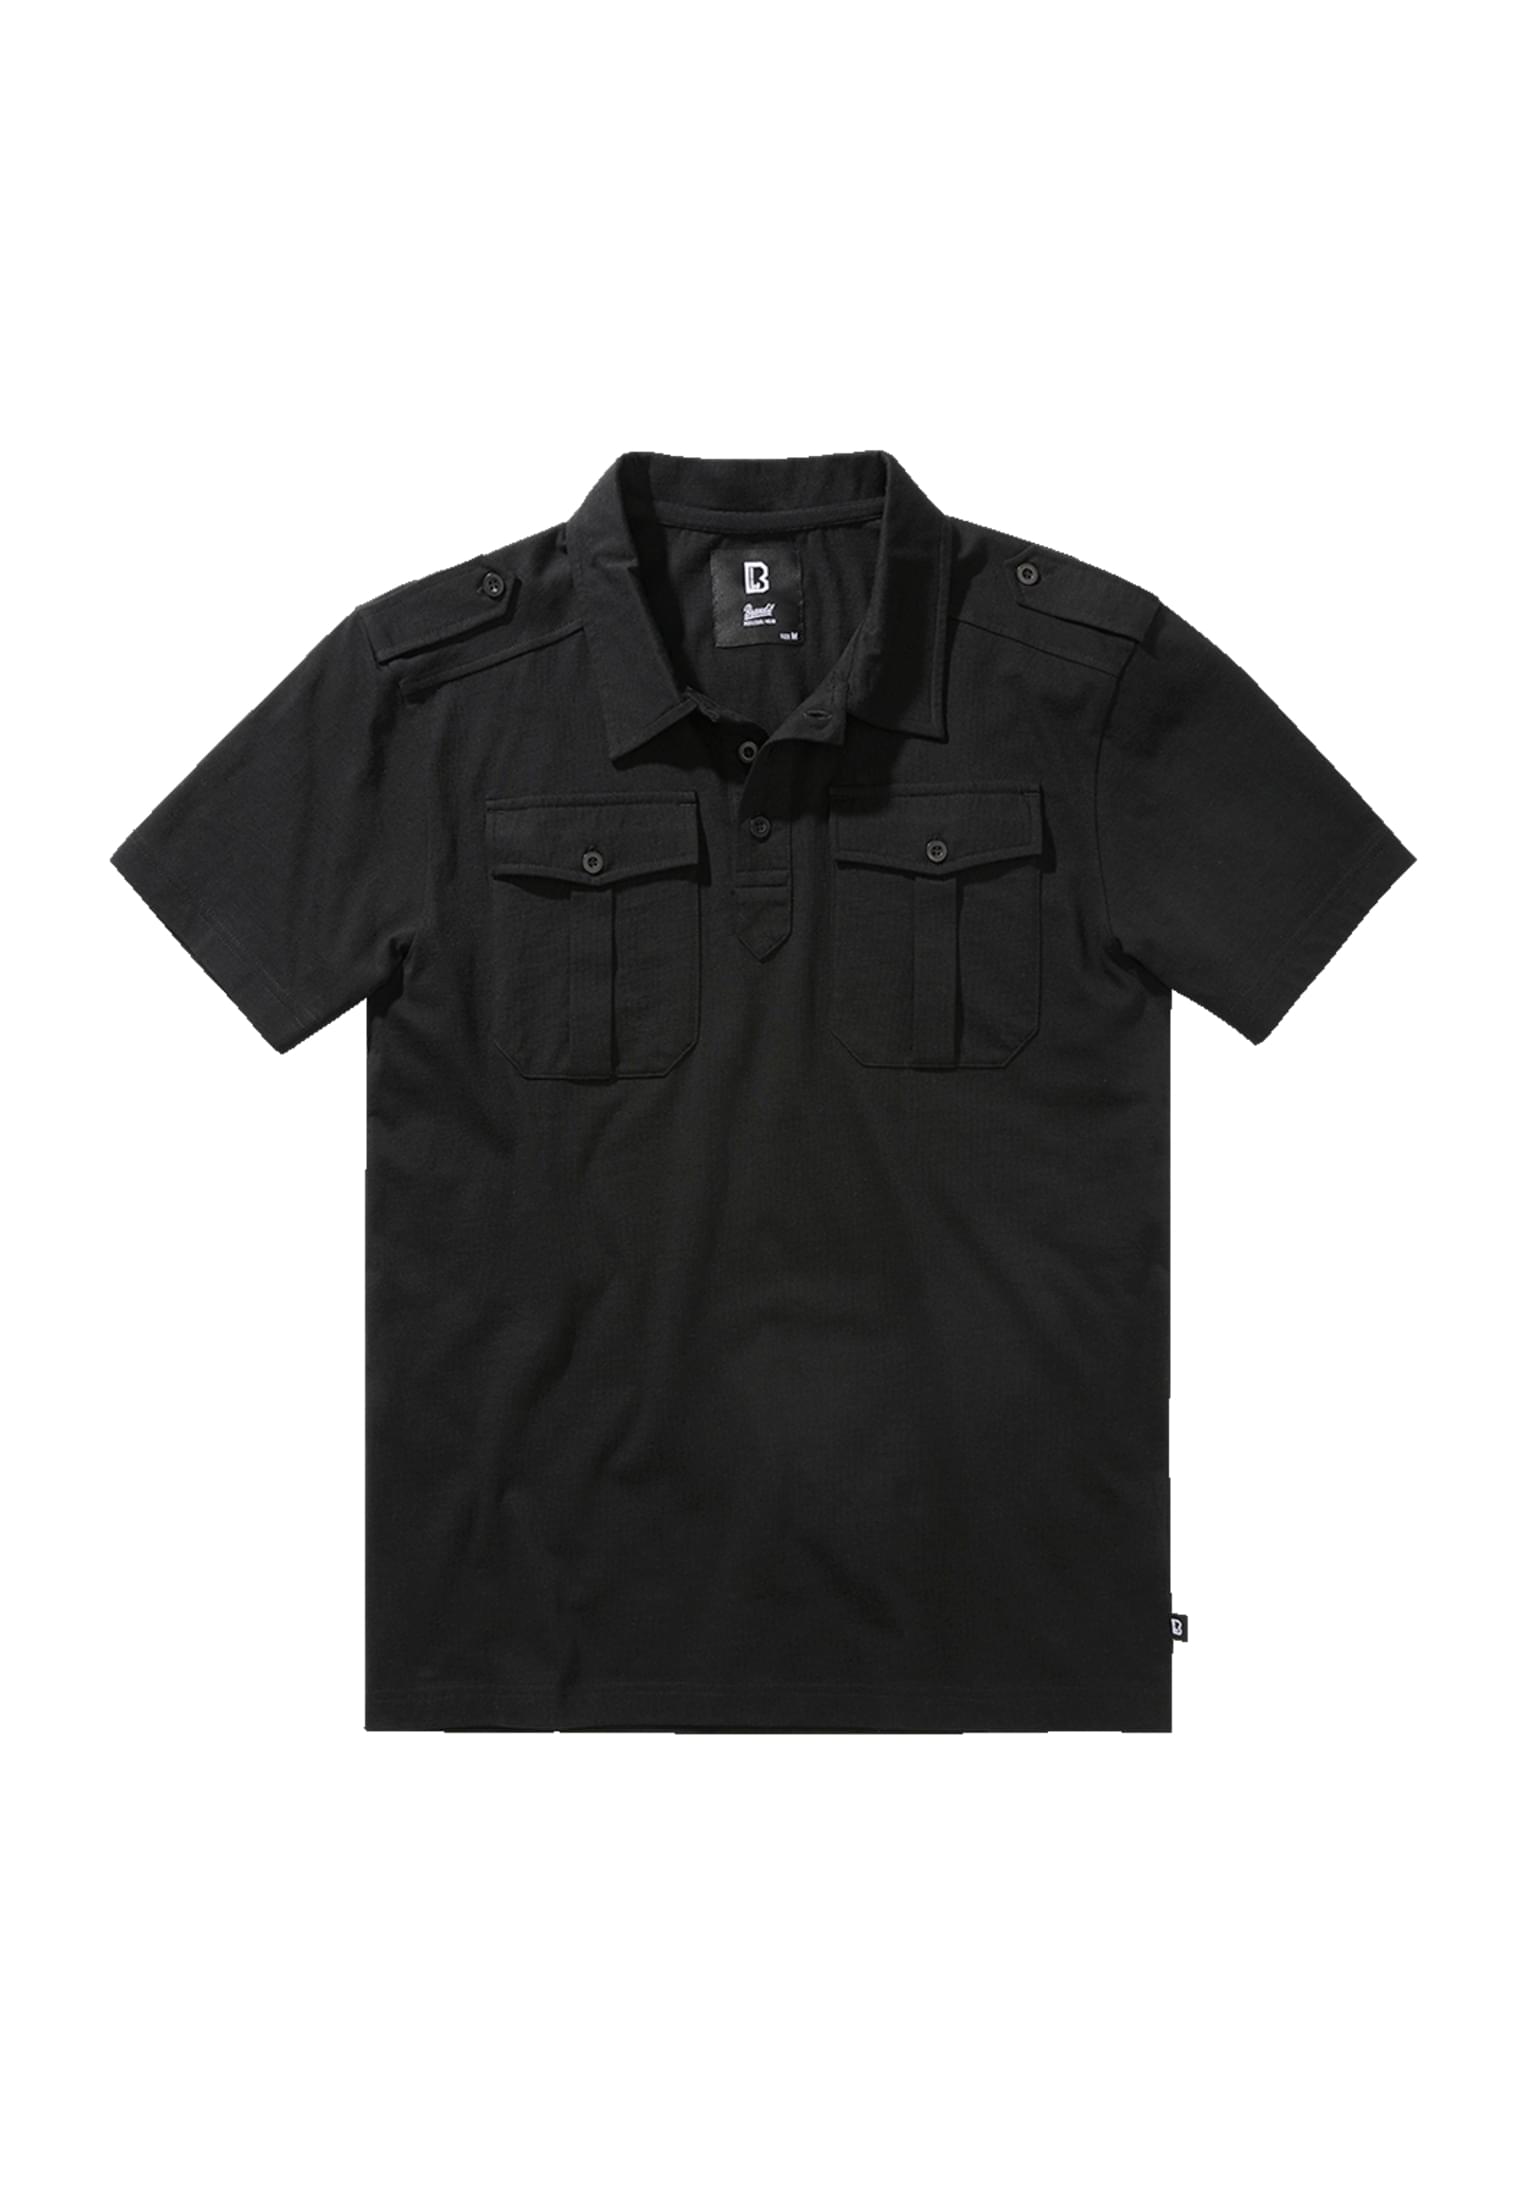 Pullover Jersey Poloshirt Jon halfsleeve in Farbe black